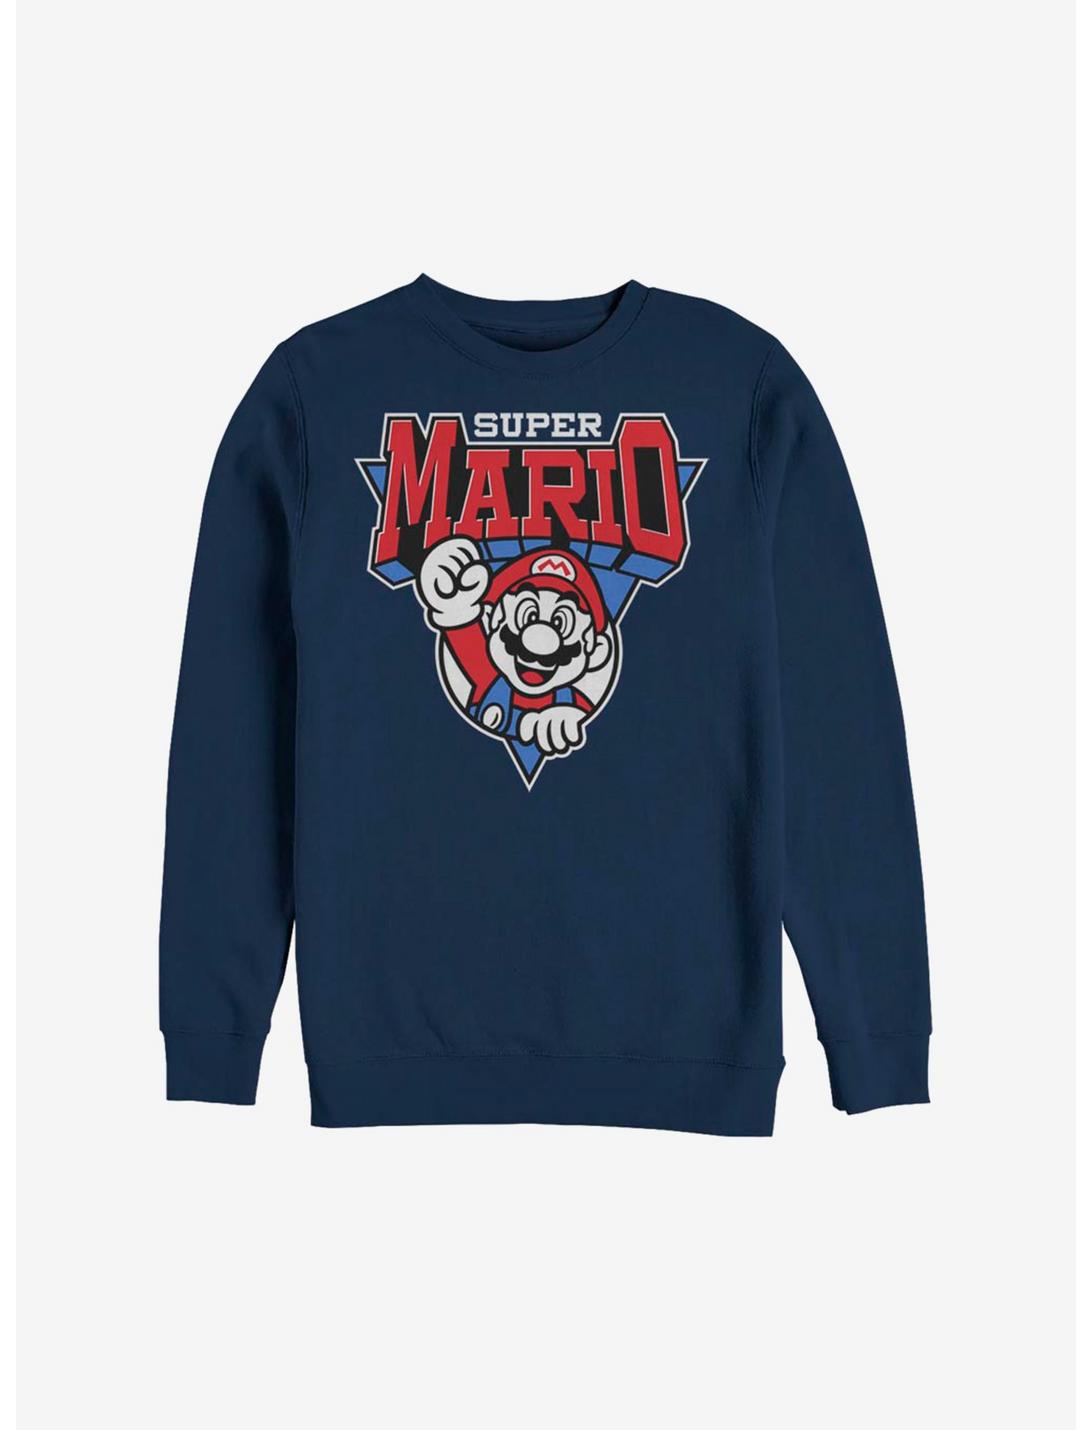 Nintendo Super Mario Team Mario Sweatshirt, NAVY, hi-res